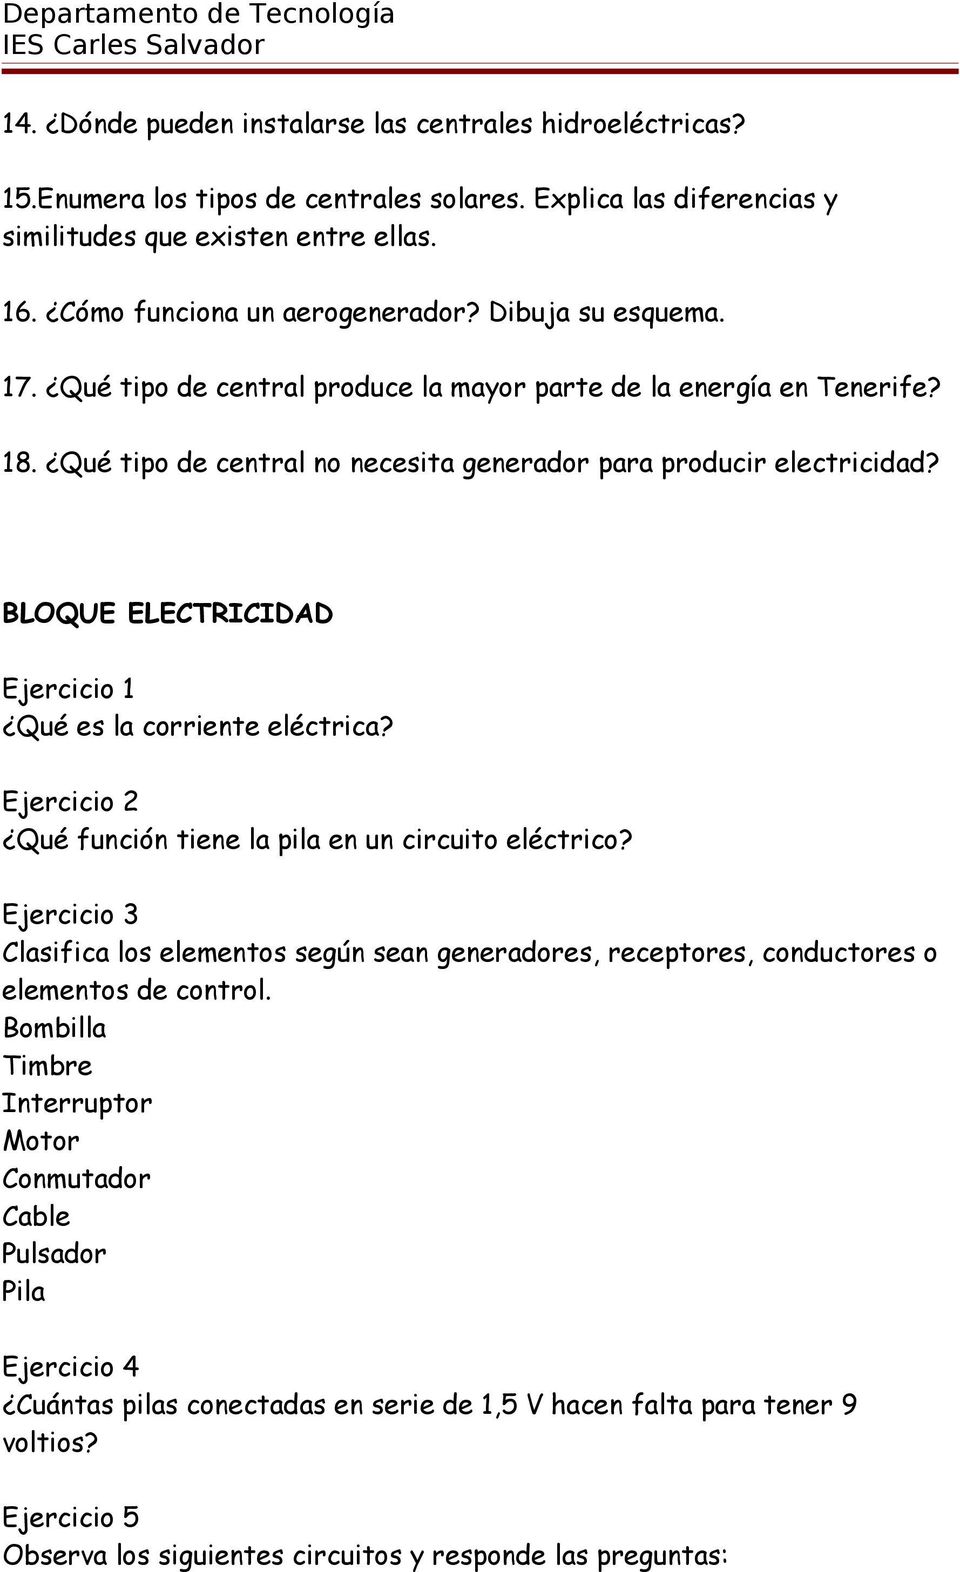 BLOQUE ELECTRICIDAD Ejercicio 1 Qué es la corriente eléctrica? Ejercicio 2 Qué función tiene la pila en un circuito eléctrico?